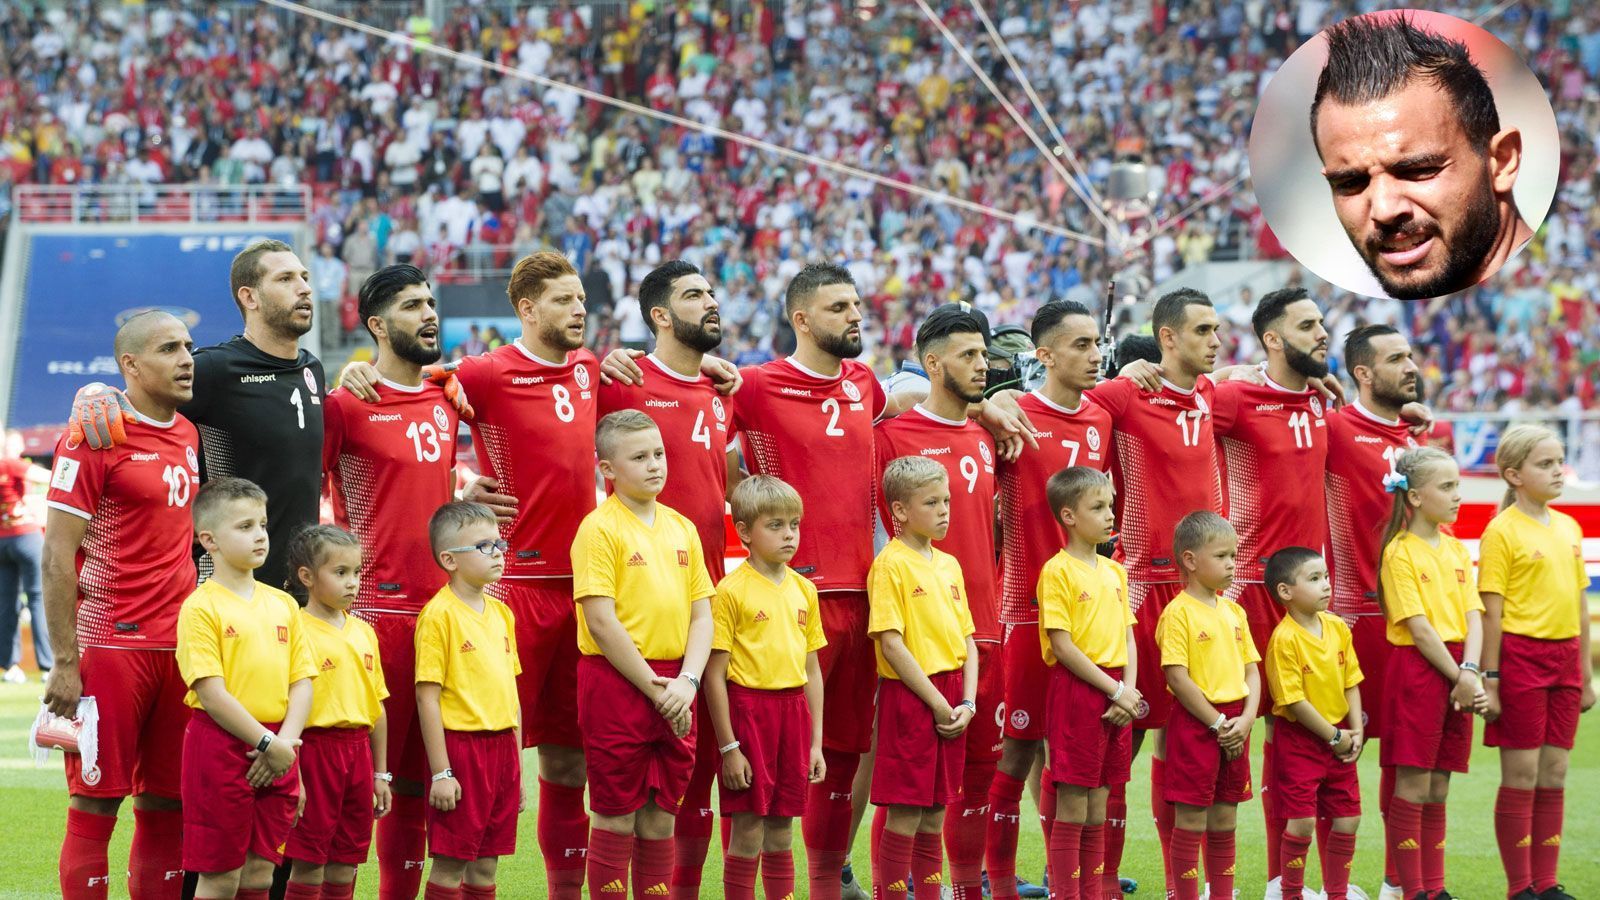 
                <strong>Verletzungspech: Tunesien fliegt vierten Keeper ein</strong><br>
                Mit dem Spiel gegen Panama verabschiedet sich Tunesien am Donnerstag von dieser WM - das ist nach den beiden Niederlagen gegen England und Belgien sicher. Vor der Partie holen sich die Afrikaner aber noch einmal Verstärkung - in Person von Moez Ben Cherifia (kl. Foto). Der 27-Jährige wird als vierter Keeper eingeflogen. Denn Tunesiens Torhüter leben gefährlich in Russland: Mouez Hassan hatte sich schon im Auftaktspiel an der Schulter verletzt, nun fällt auch dessen Vertreter Farouk Ben Mustapha mit einer Knieblessur aus. Damit ist aus dem ursprünglichen Trio nur noch die Nummer drei Balbouli einsatzfähig. Zwischen Ben Cherifia und der Aufnahme in den Kader steht aber noch die FIFA, die eine Sondergenehmigung ausstellen müsste.
              